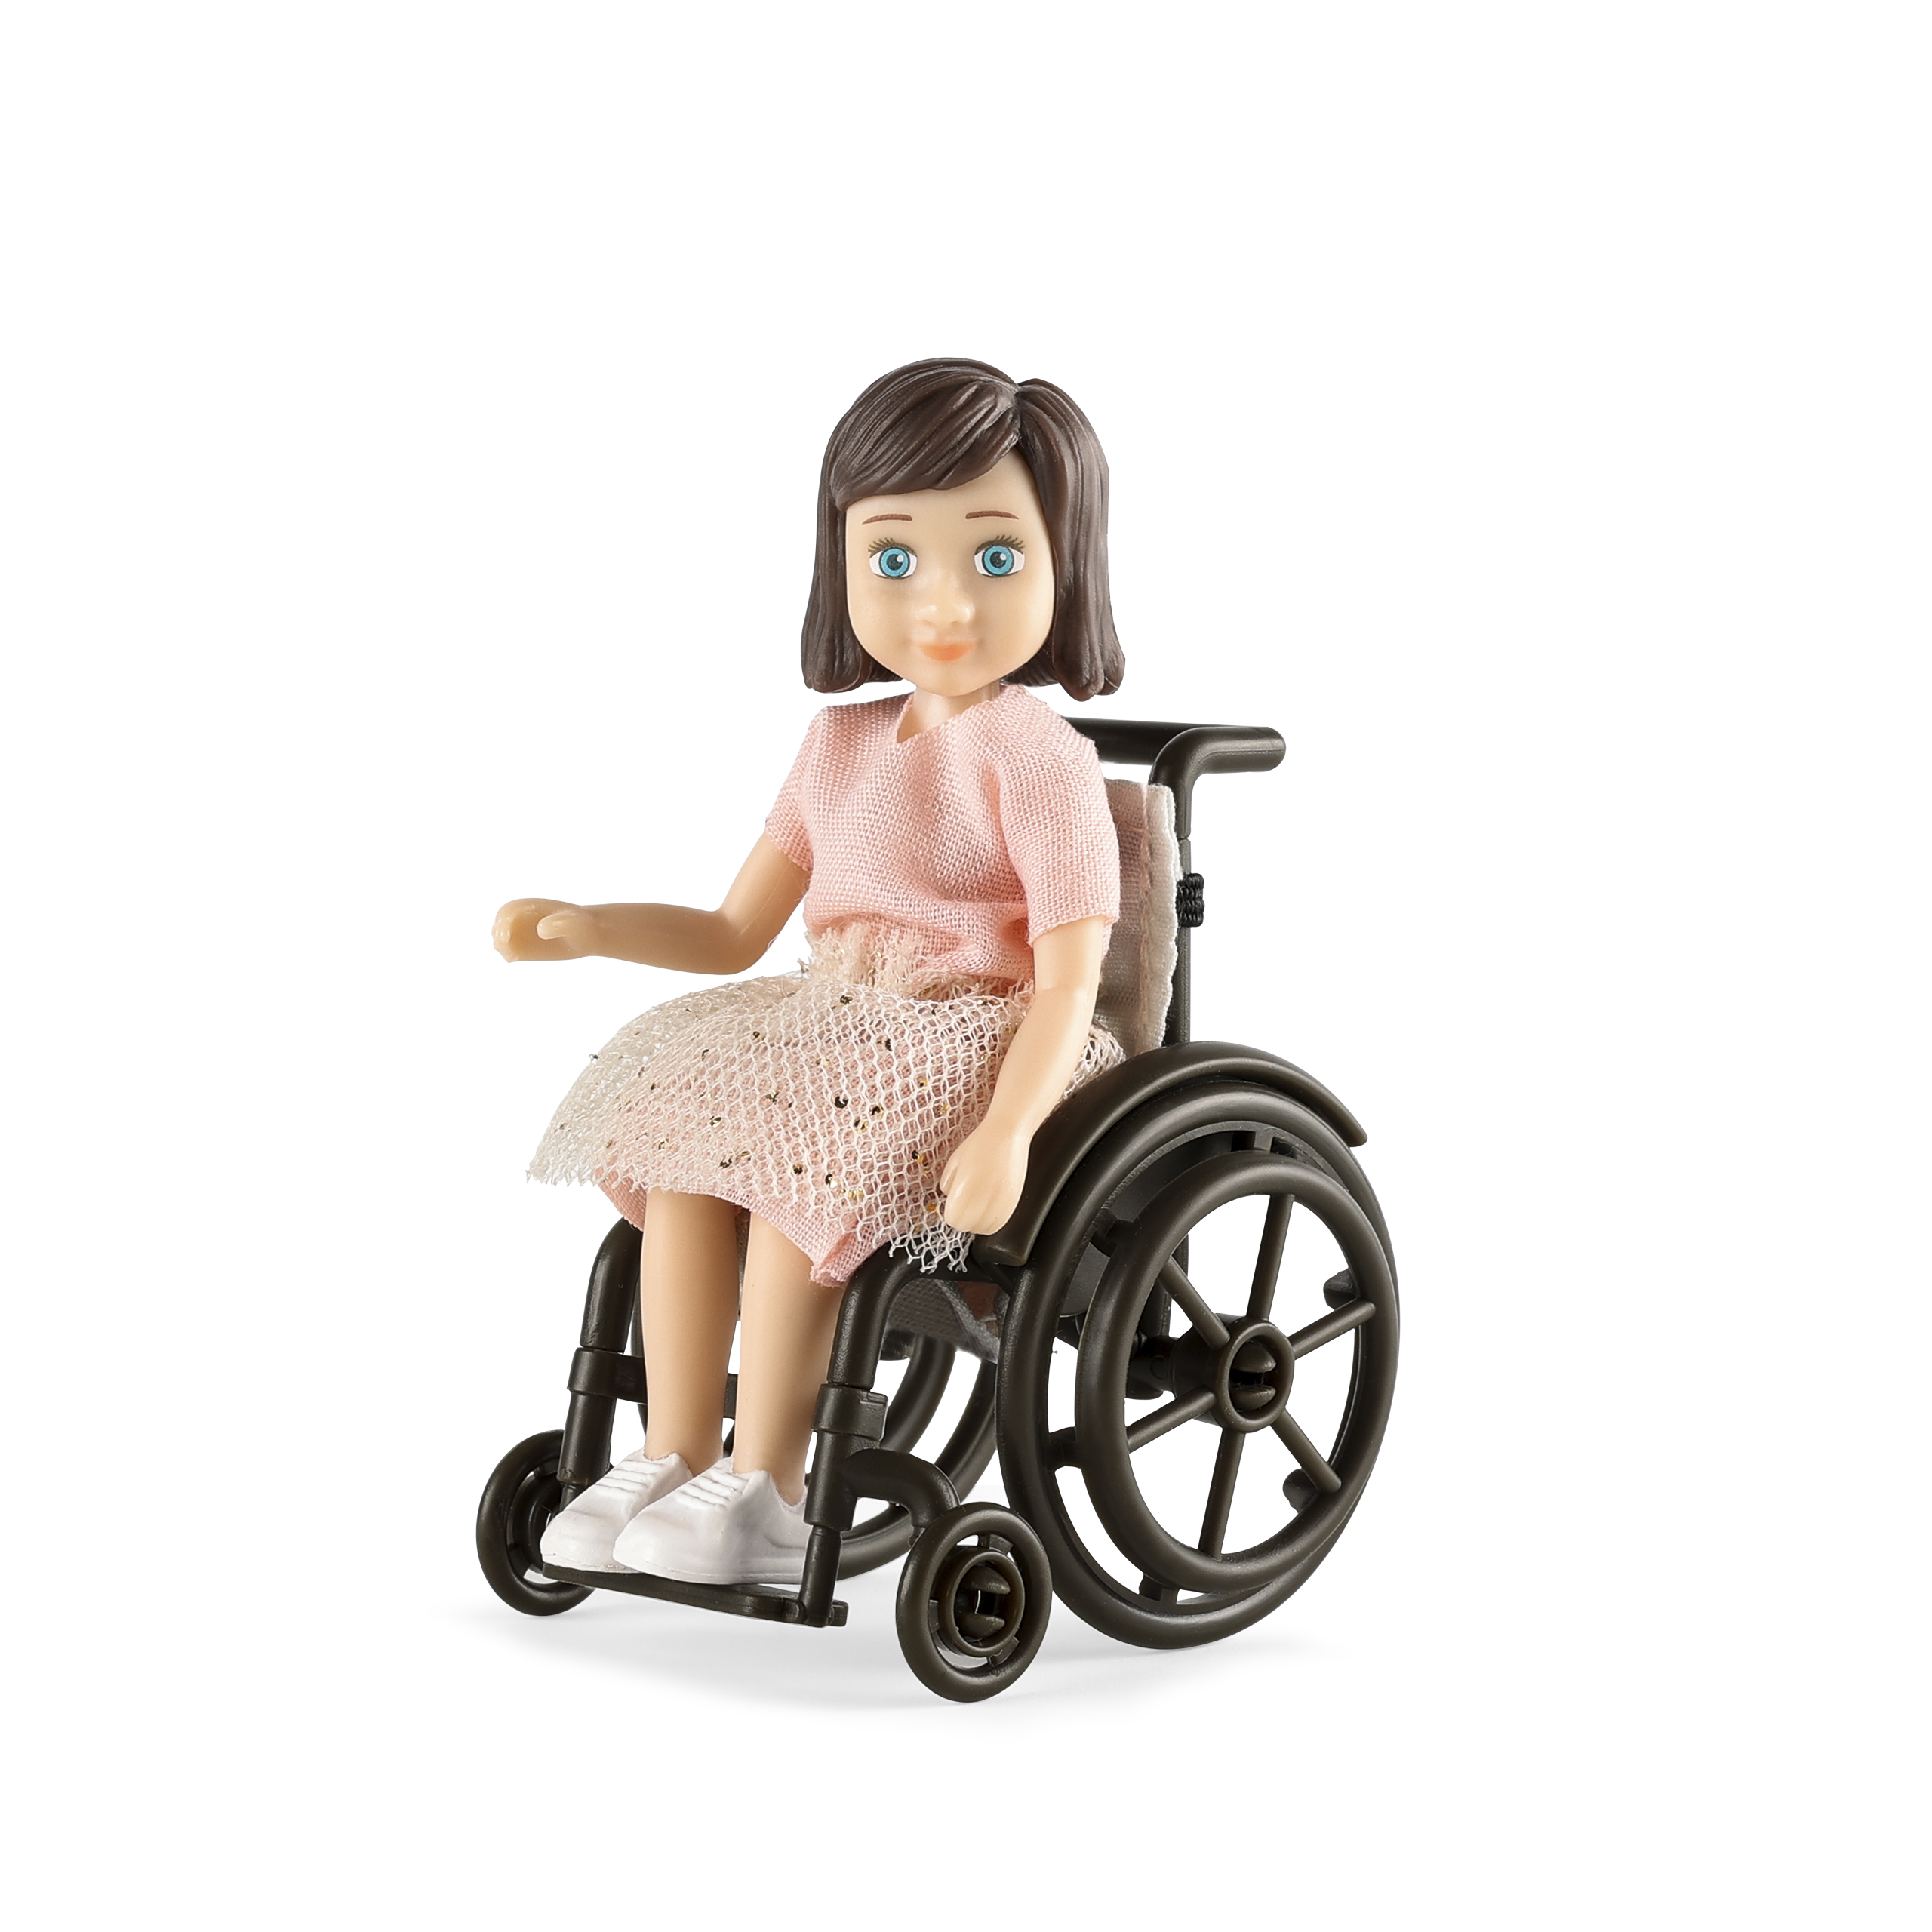 Dolls lundby	dollshouse doll with wheelchair